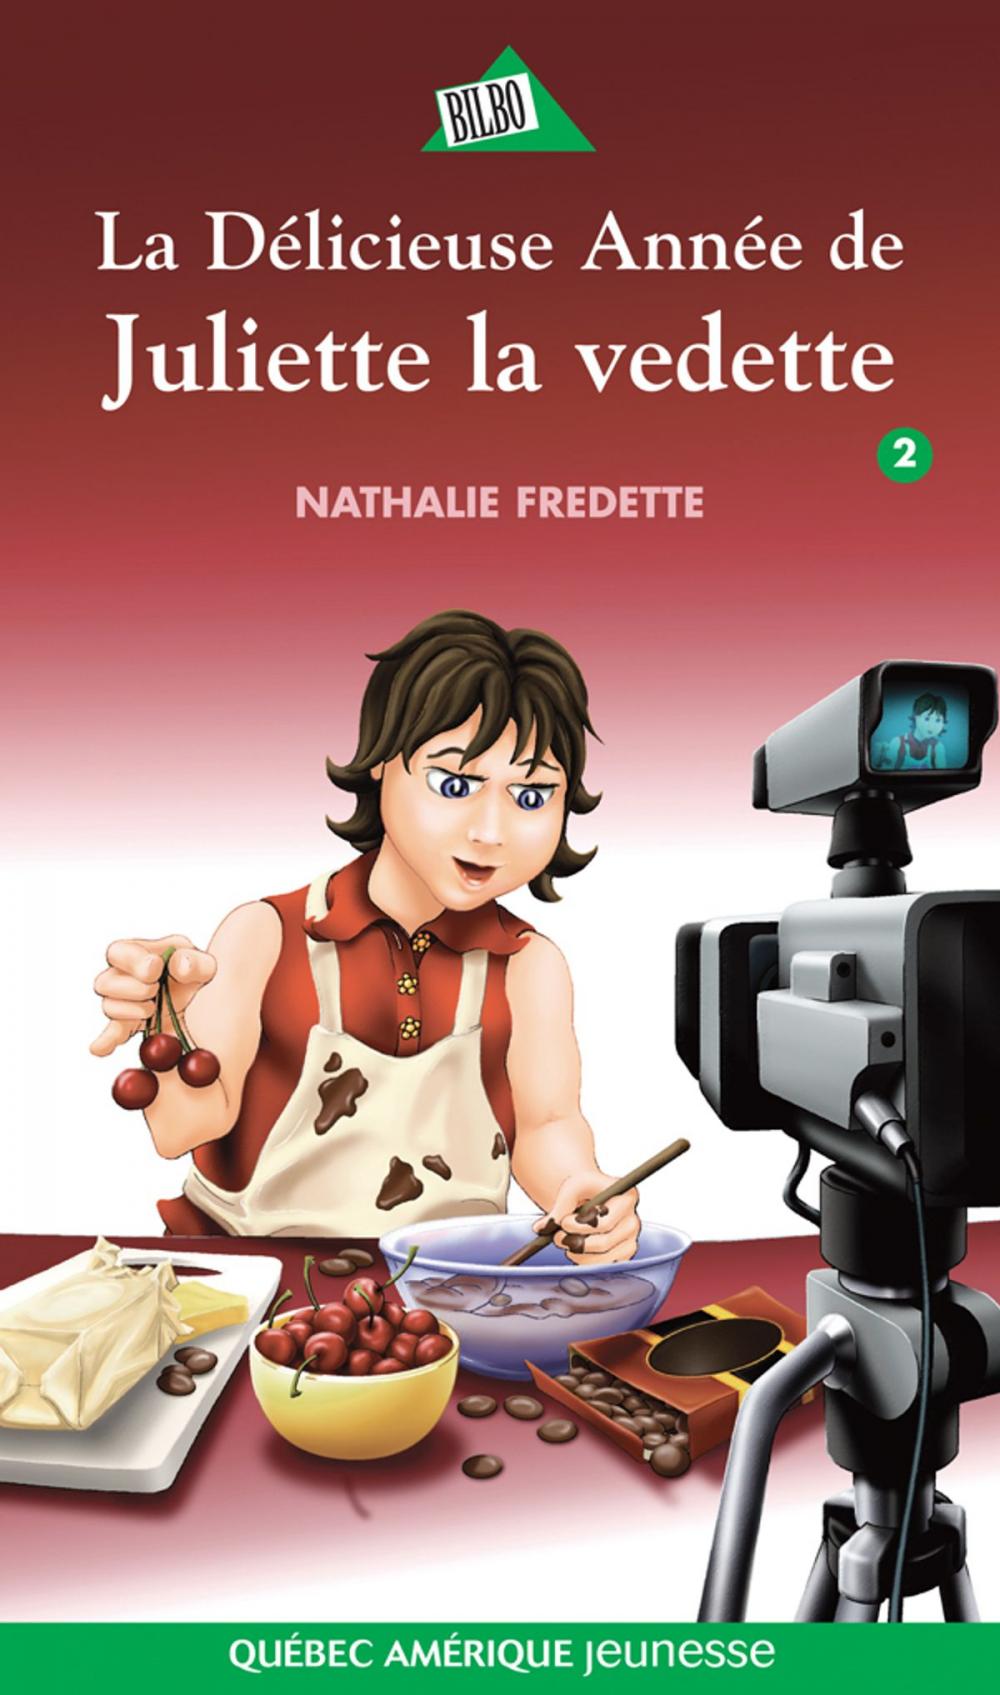 Big bigCover of Juliette 2 - La Délicieuse Année de Juliette la vedette